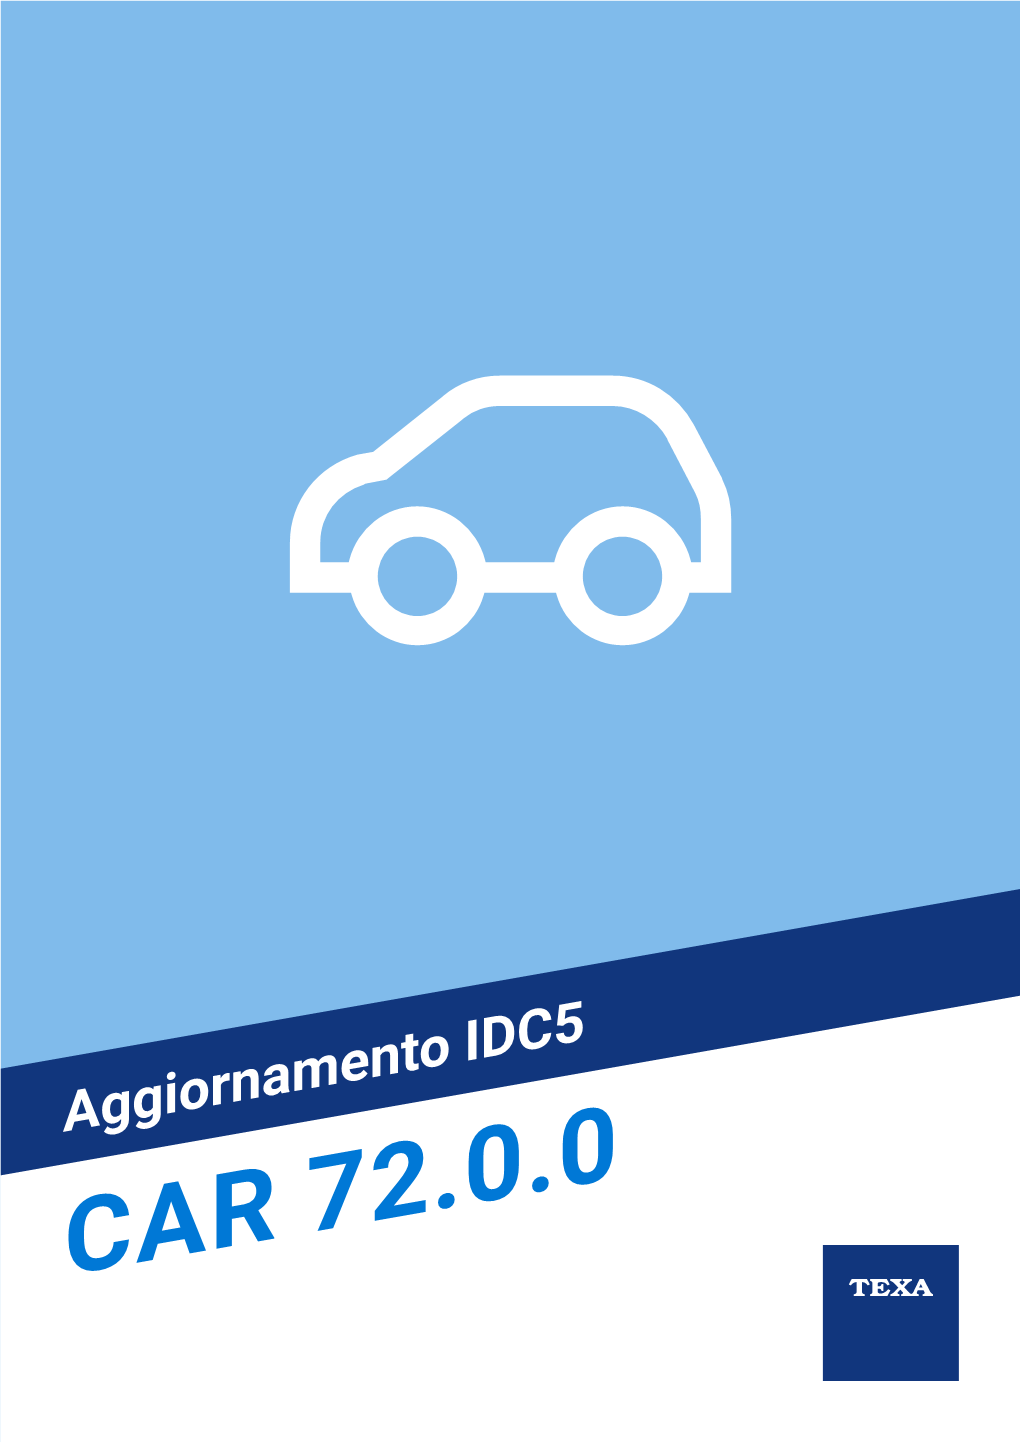 IDC5 CAR 72.0.0 Indice